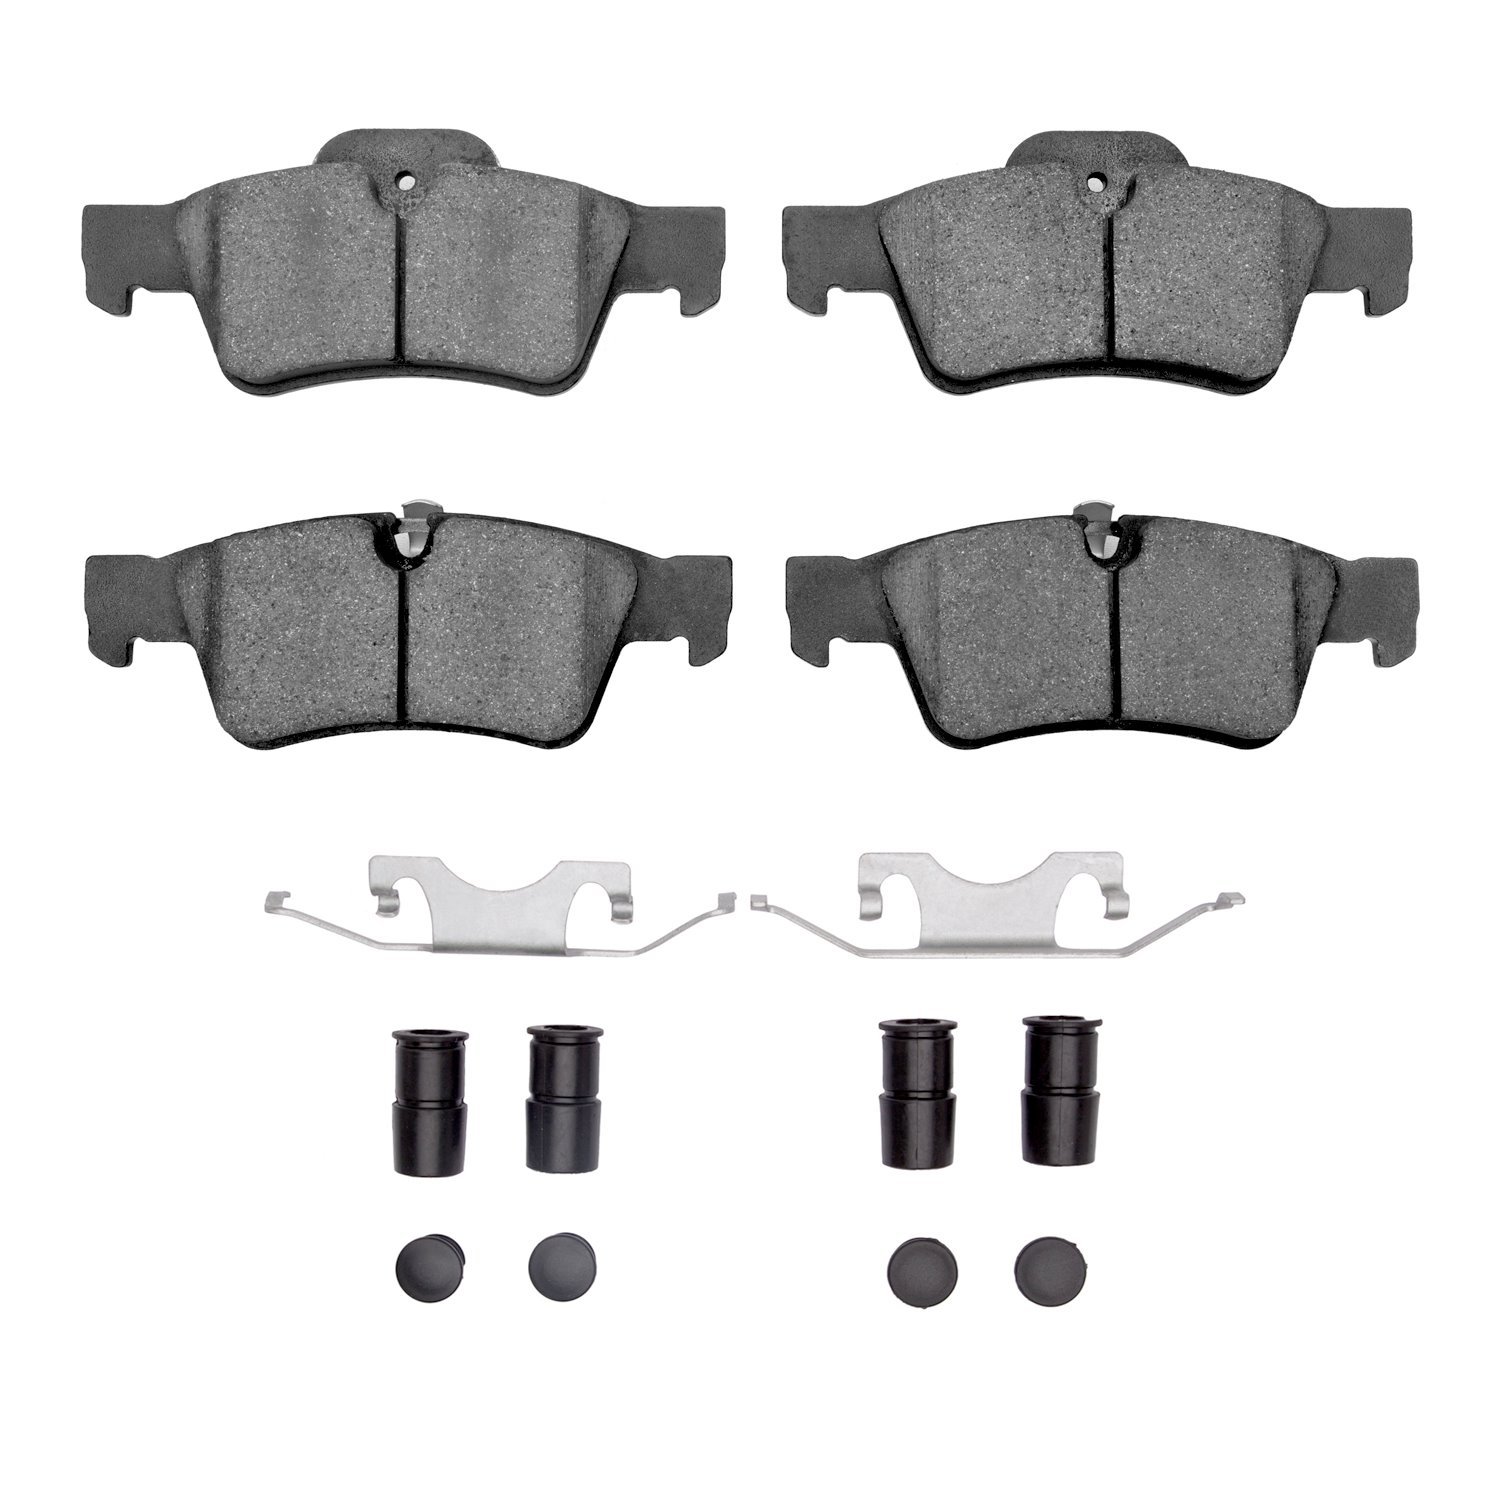 1600-1122-01 5000 Euro Ceramic Brake Pads & Hardware Kit, 2005-2018 Mercedes-Benz, Position: Rear